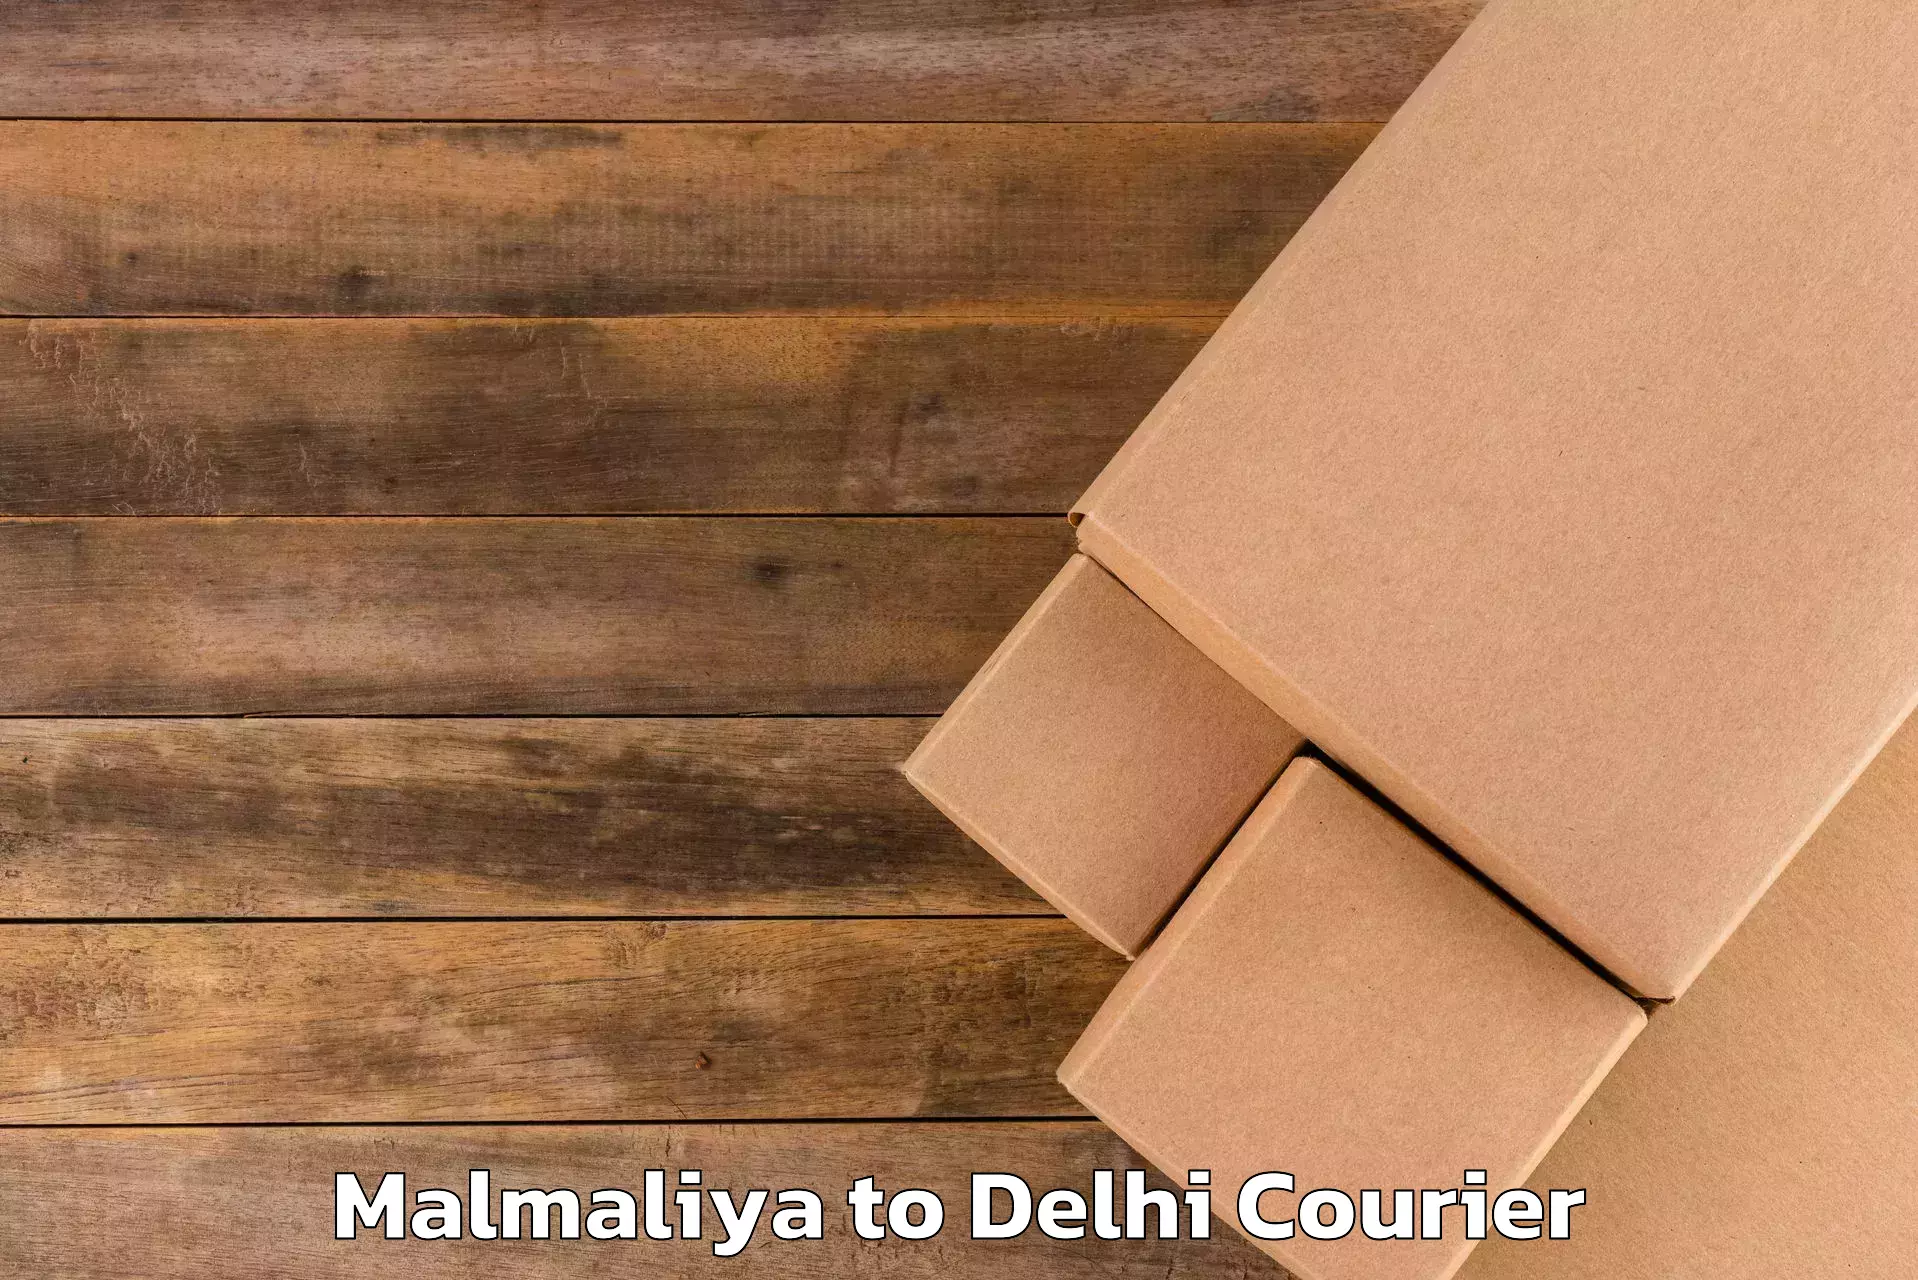 Baggage courier rates calculator Malmaliya to Jawaharlal Nehru University New Delhi